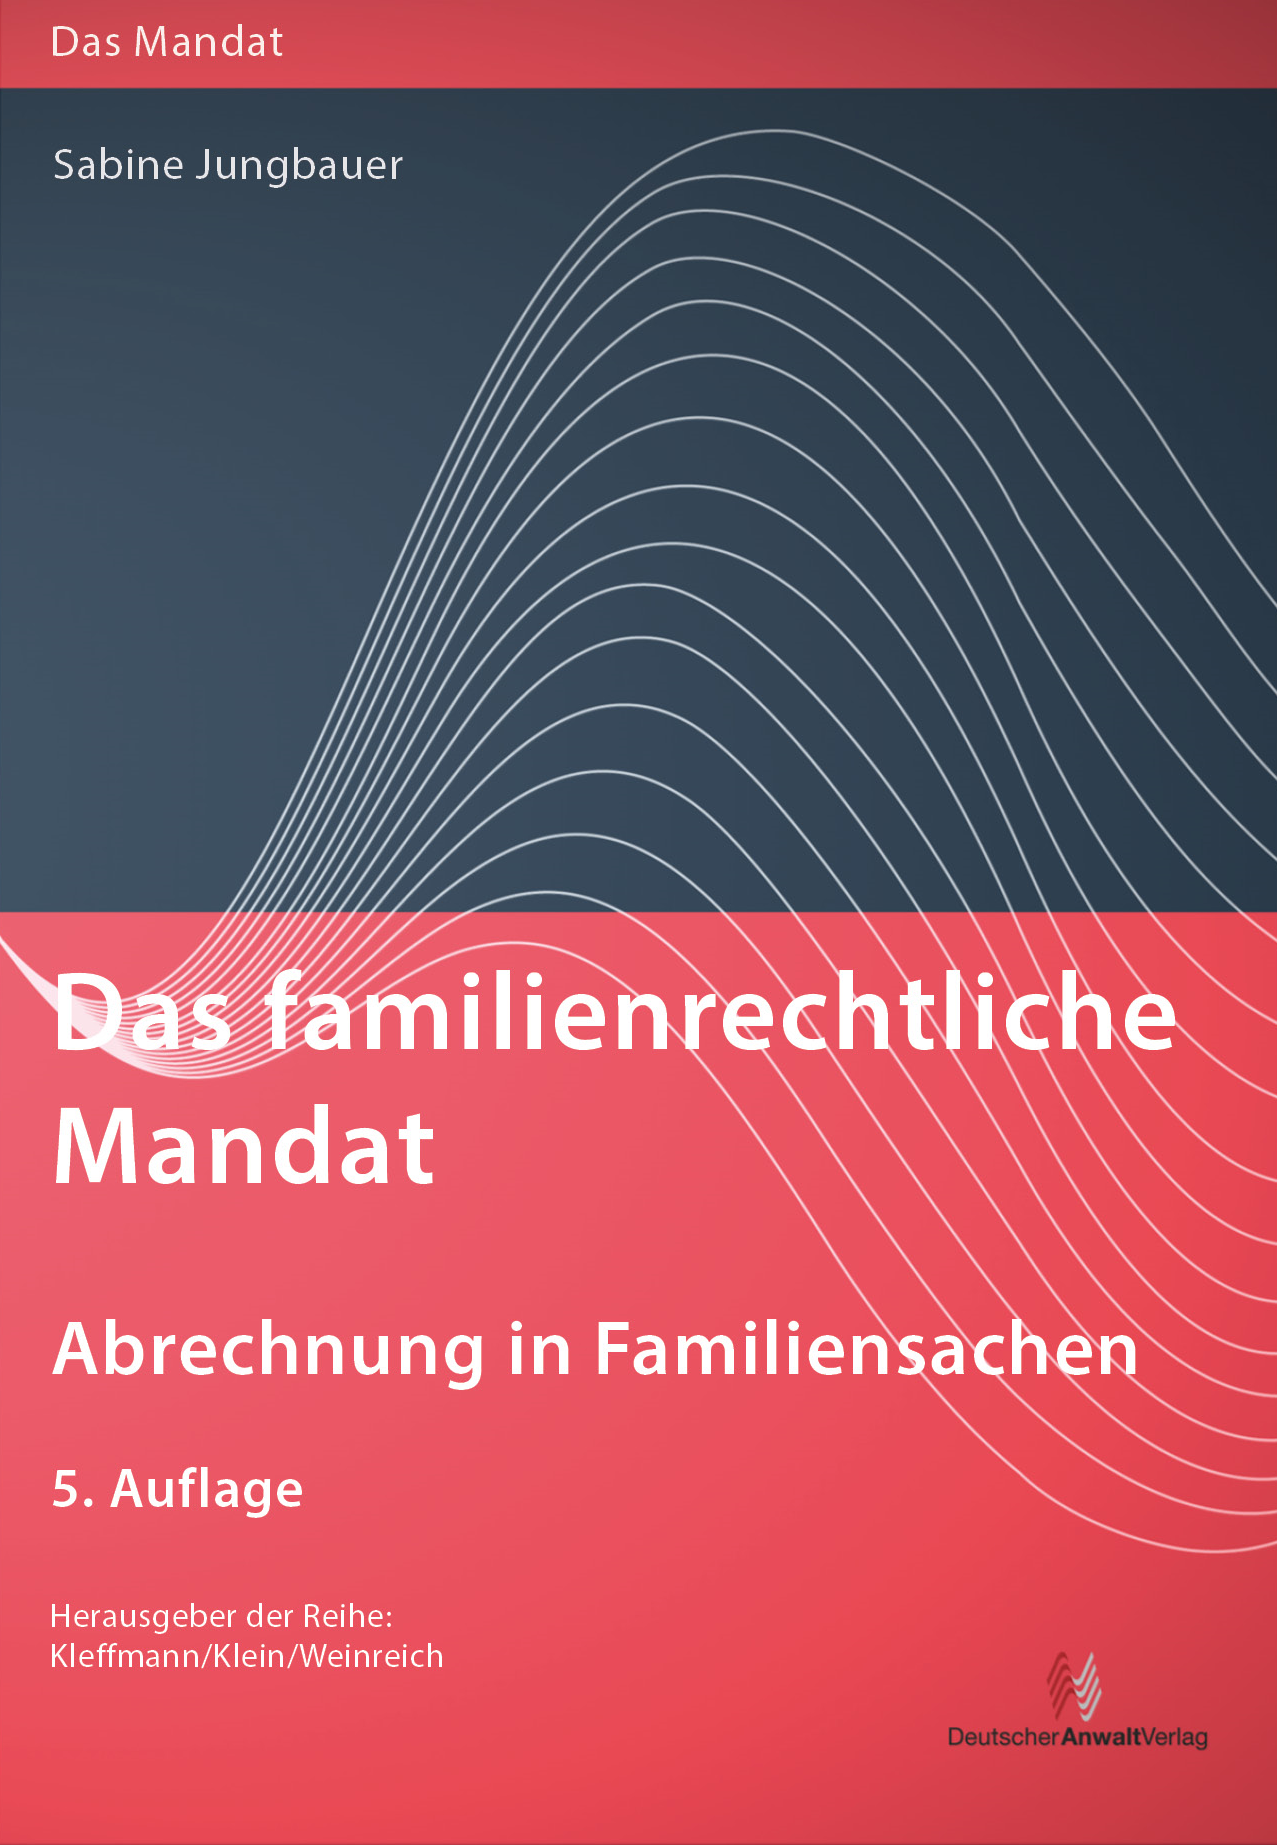 Abbildung: Das familienrechtliche Mandat - Abrechnung in Familiensachen